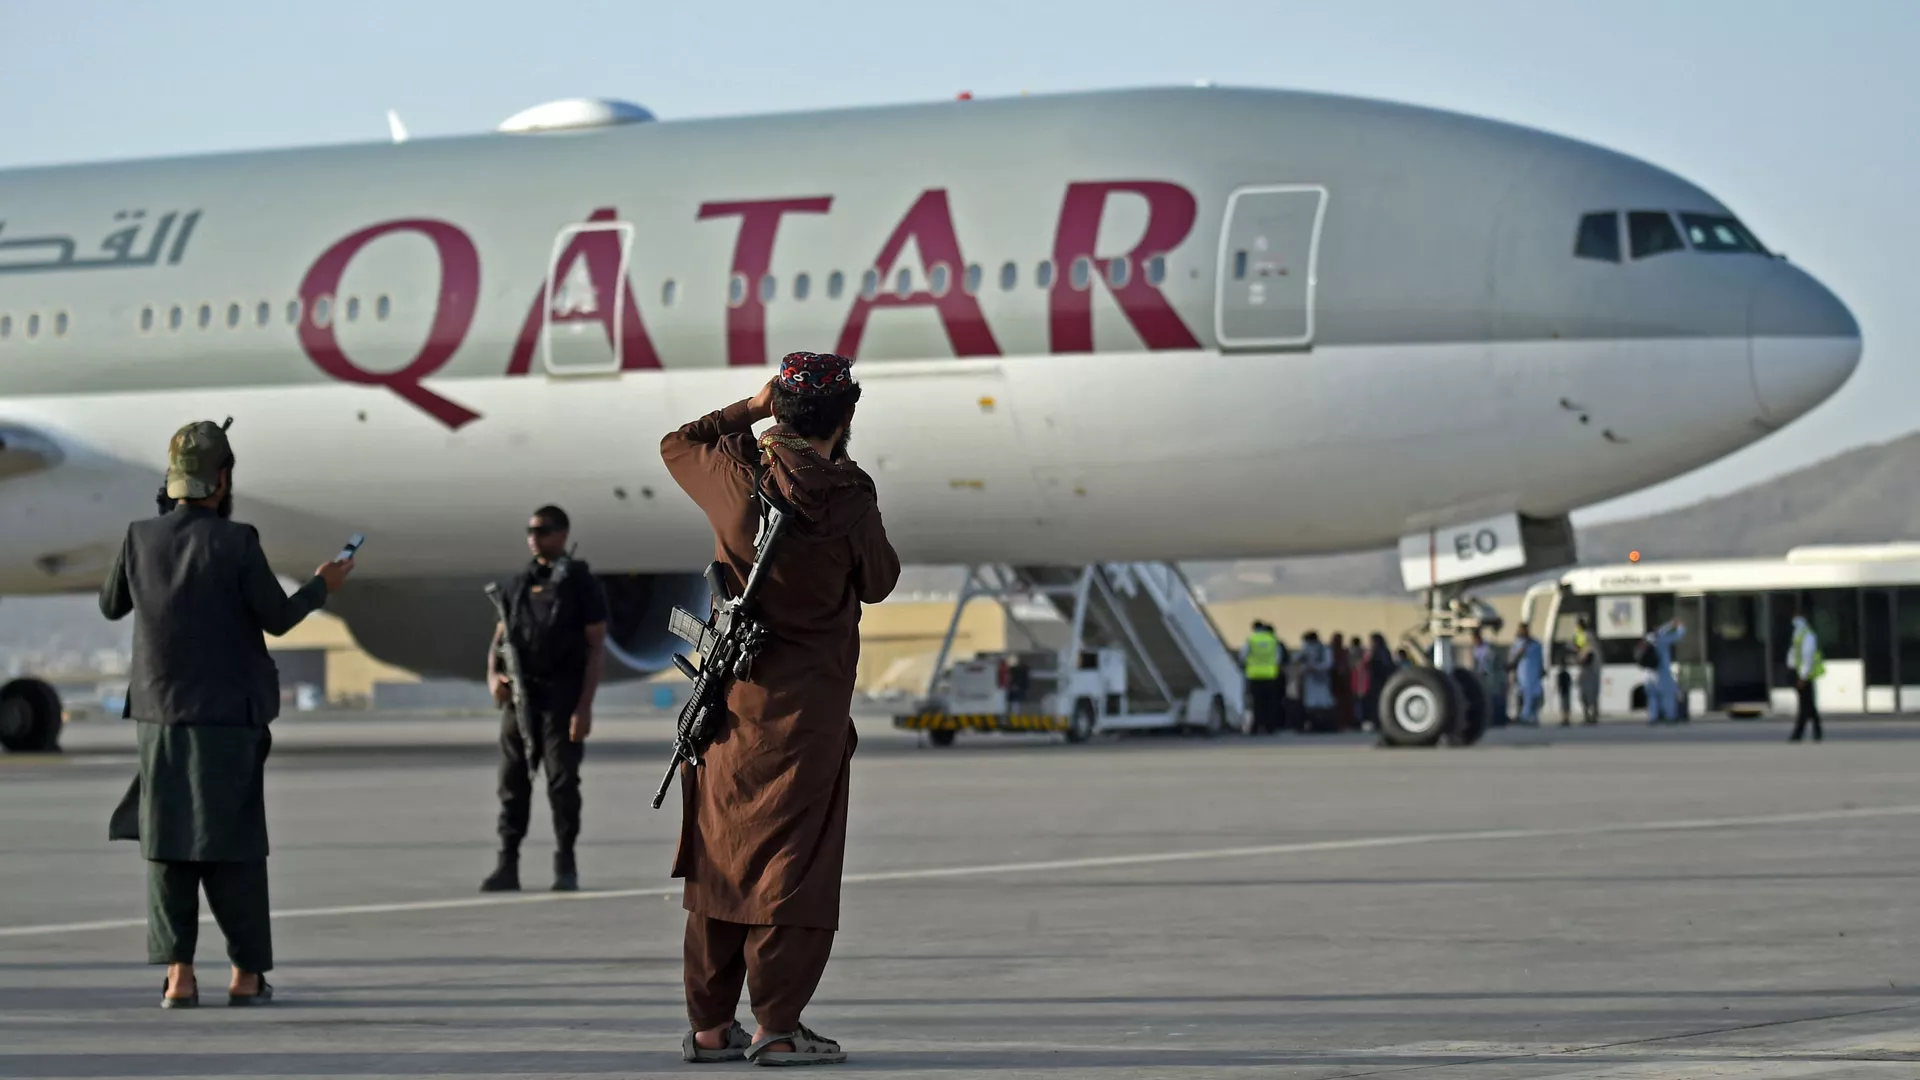 أفراد الأمن القطريون (يسار) ومقاتلو طالبان يقفون في حراسة أثناء صعود الركاب على متن طائرة الخطوط الجوية القطرية، 9 سبتمبر/ أيلول 2021. (وكالات)